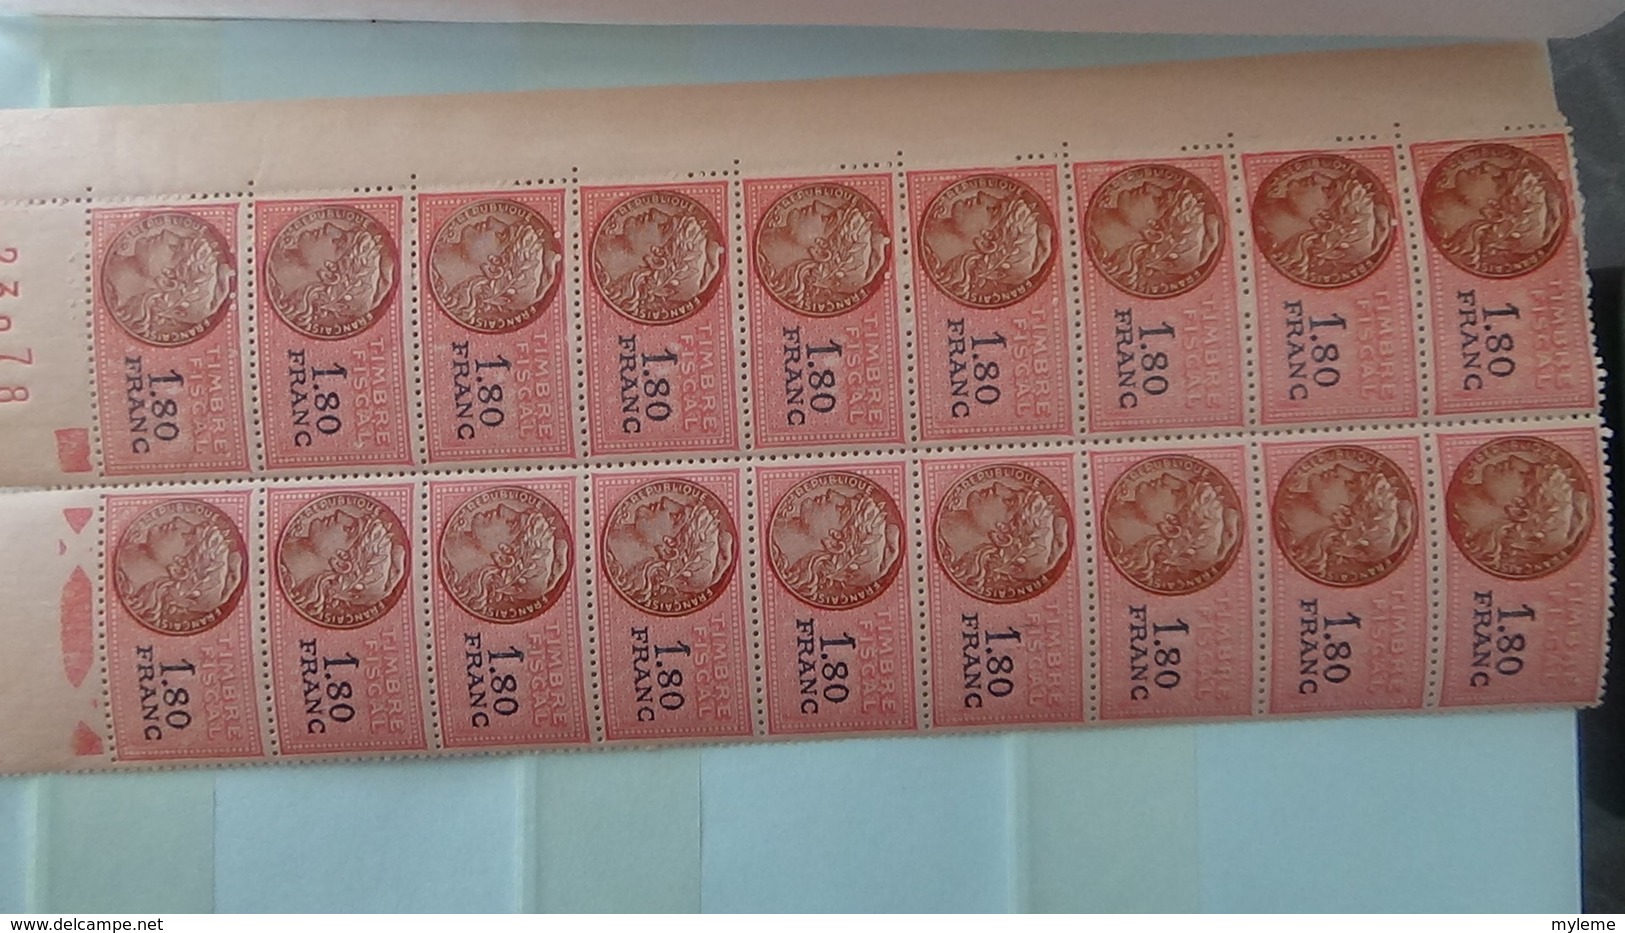 Carnet à choix avec 180 timbres fiscaux tous ** et coins datés. Pas commun !!!